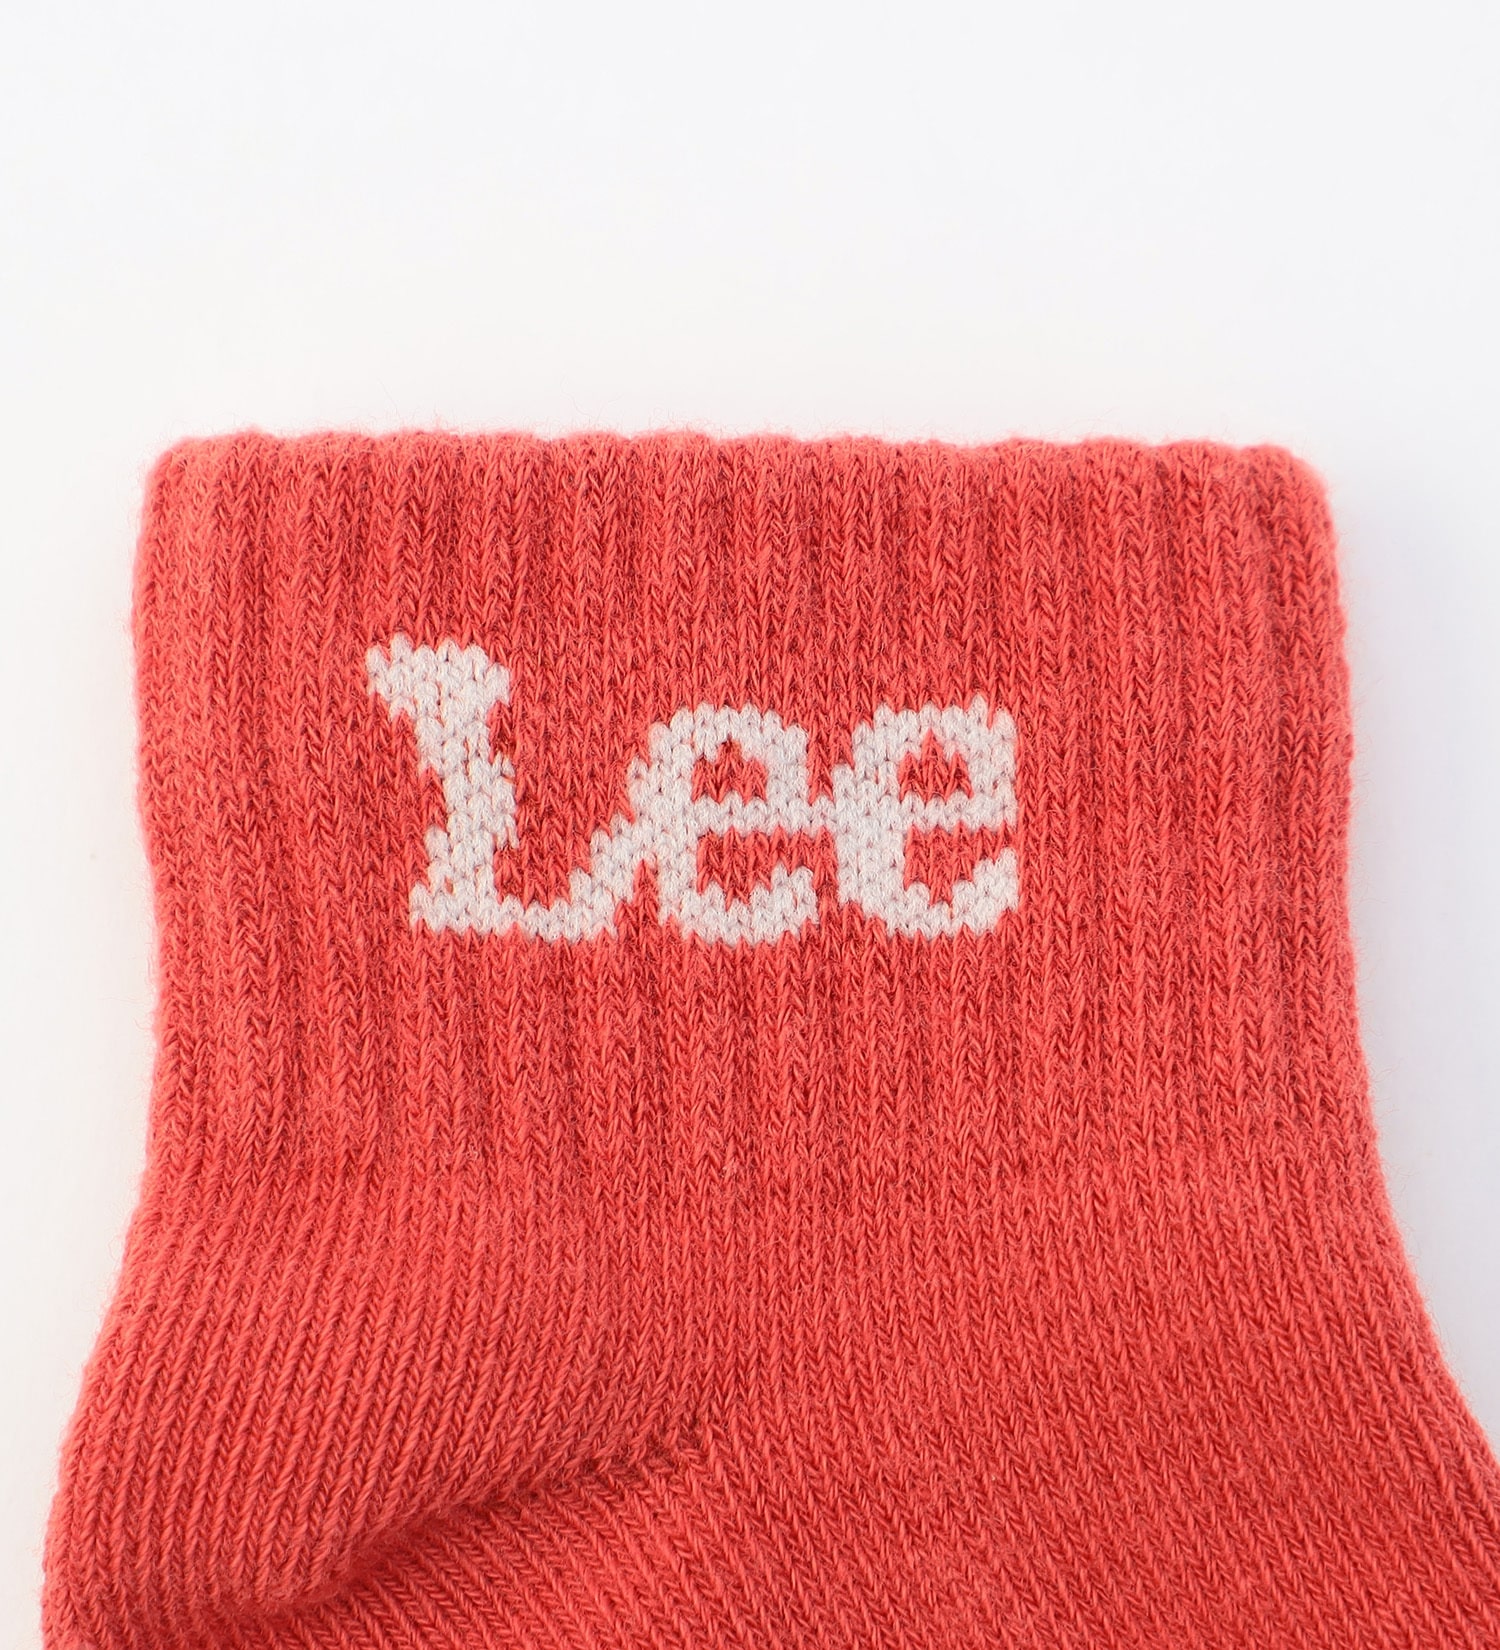 Lee(リー)のLee ベビーソックス 3足組|ファッション雑貨/靴下/キッズ|その他1